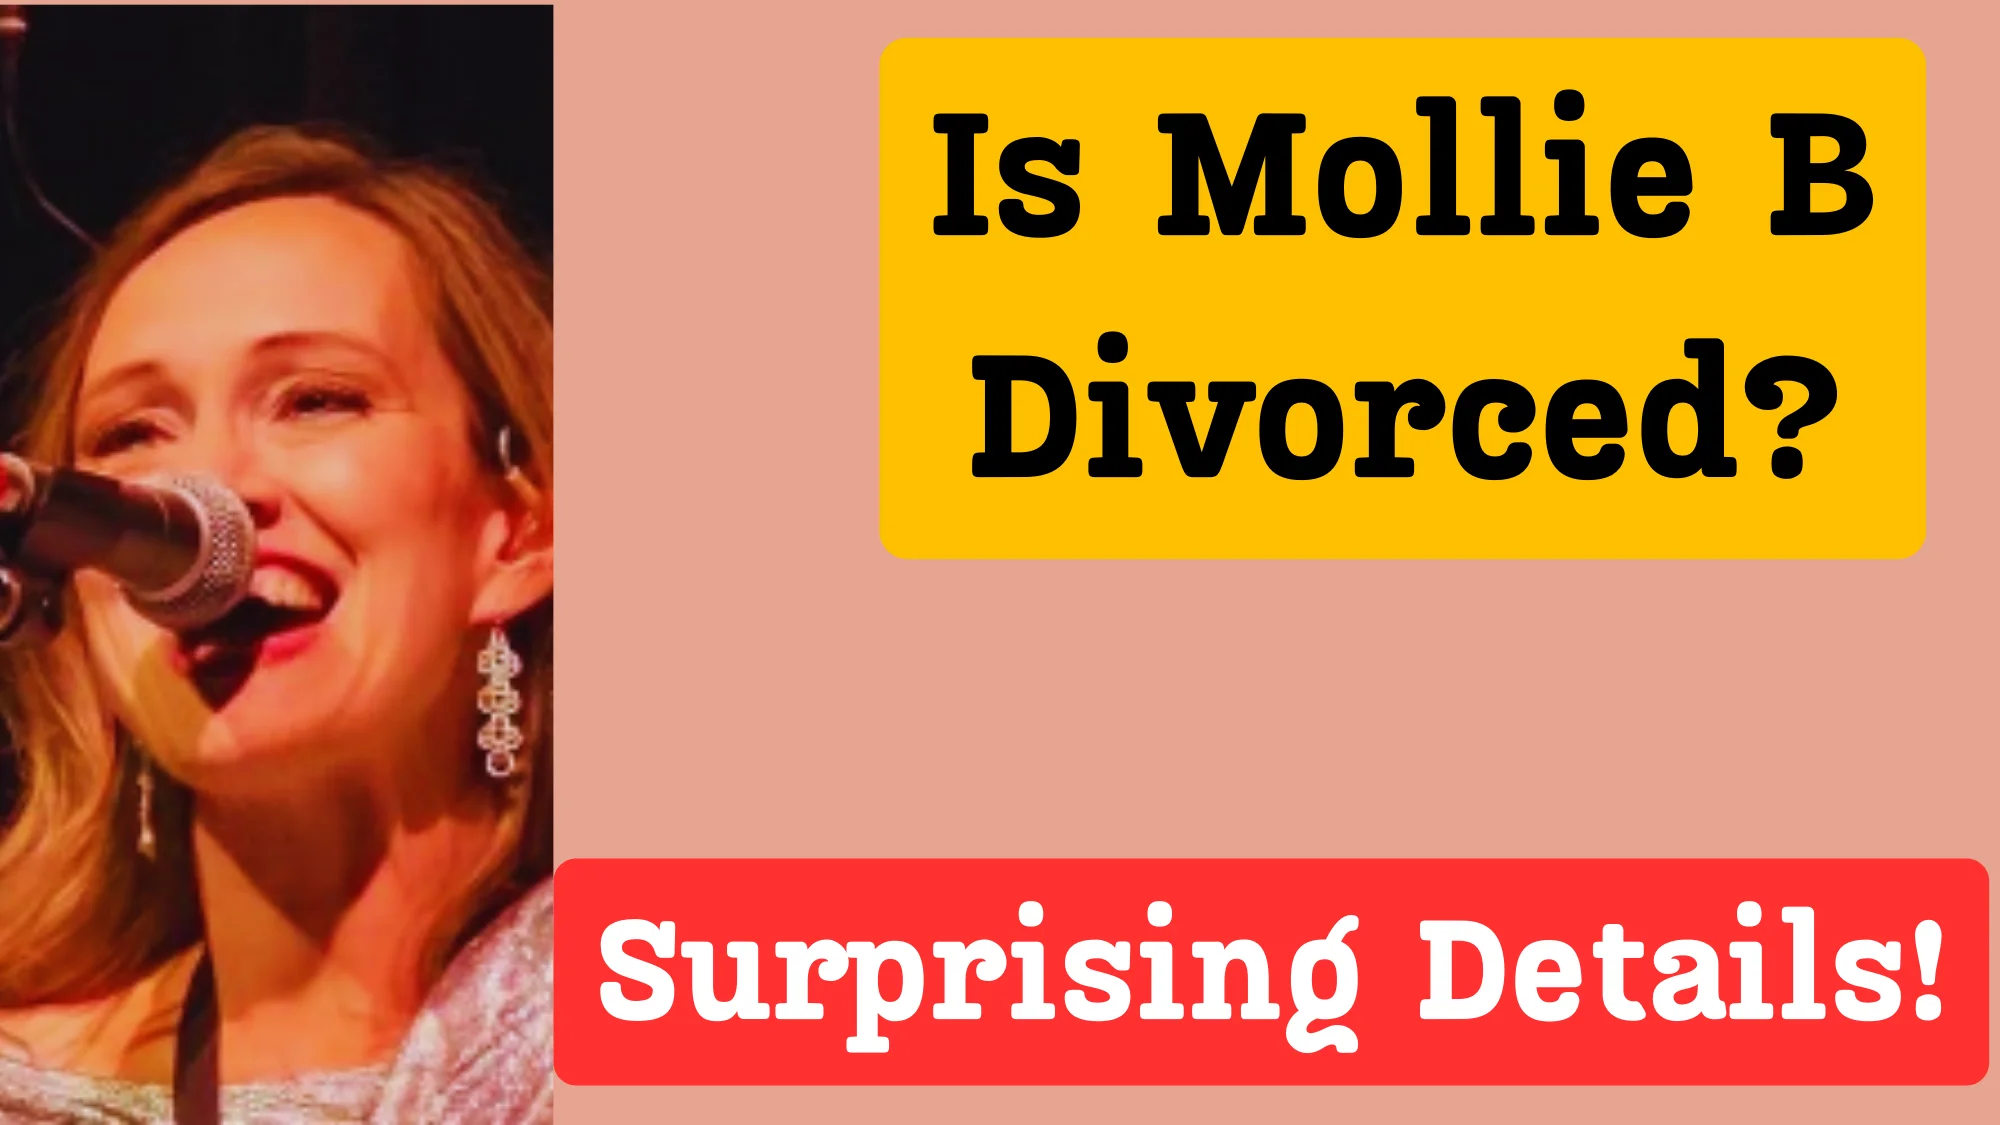 Mollie B divorce